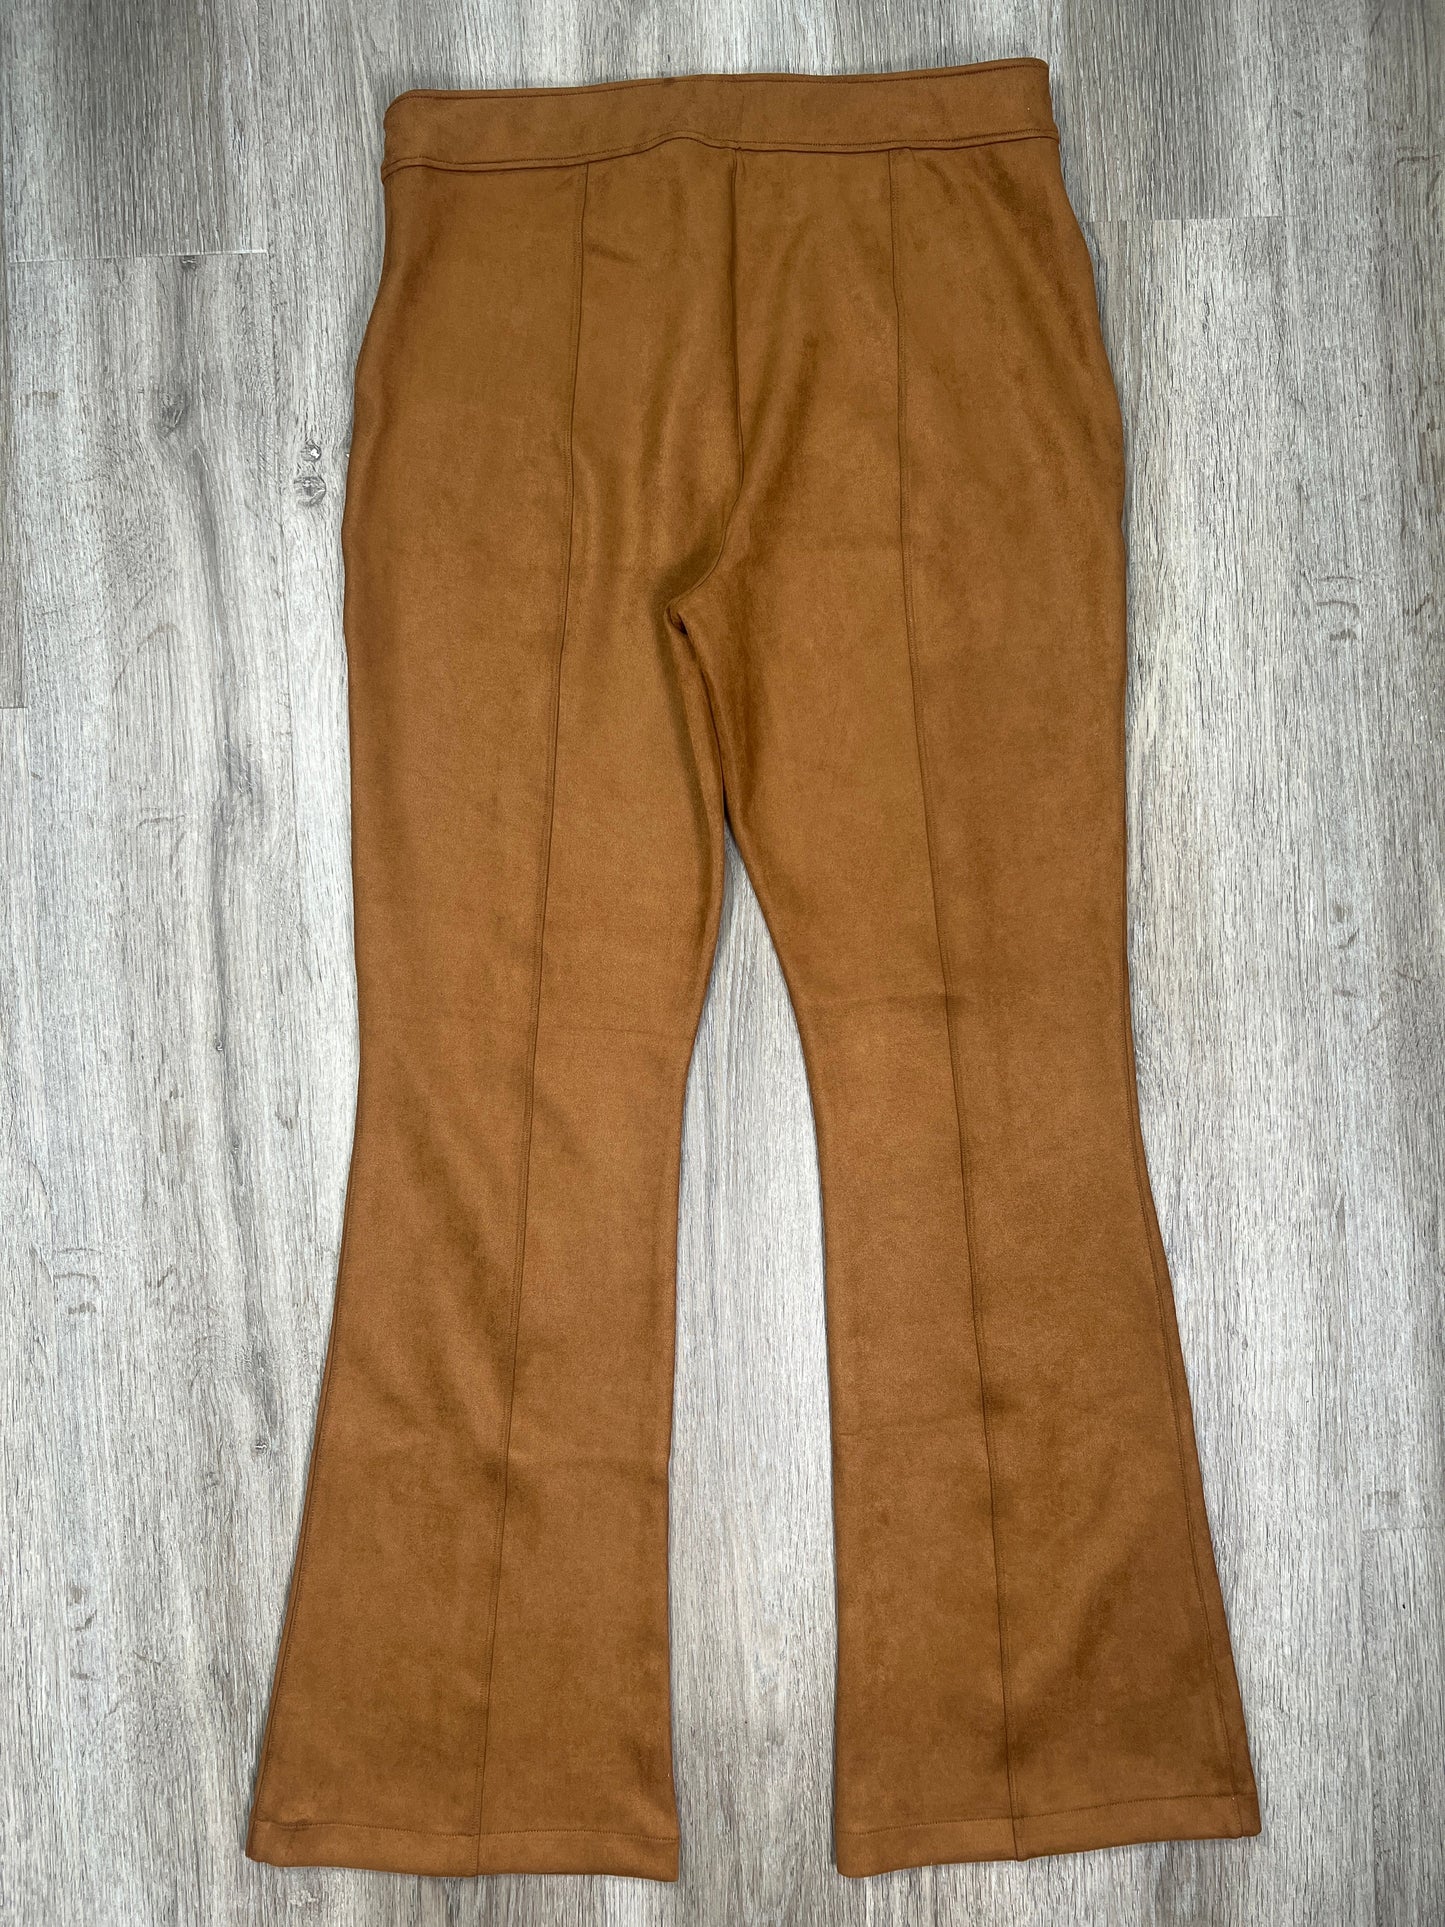 Brown Pants Wide Leg Spanx, Size 2x